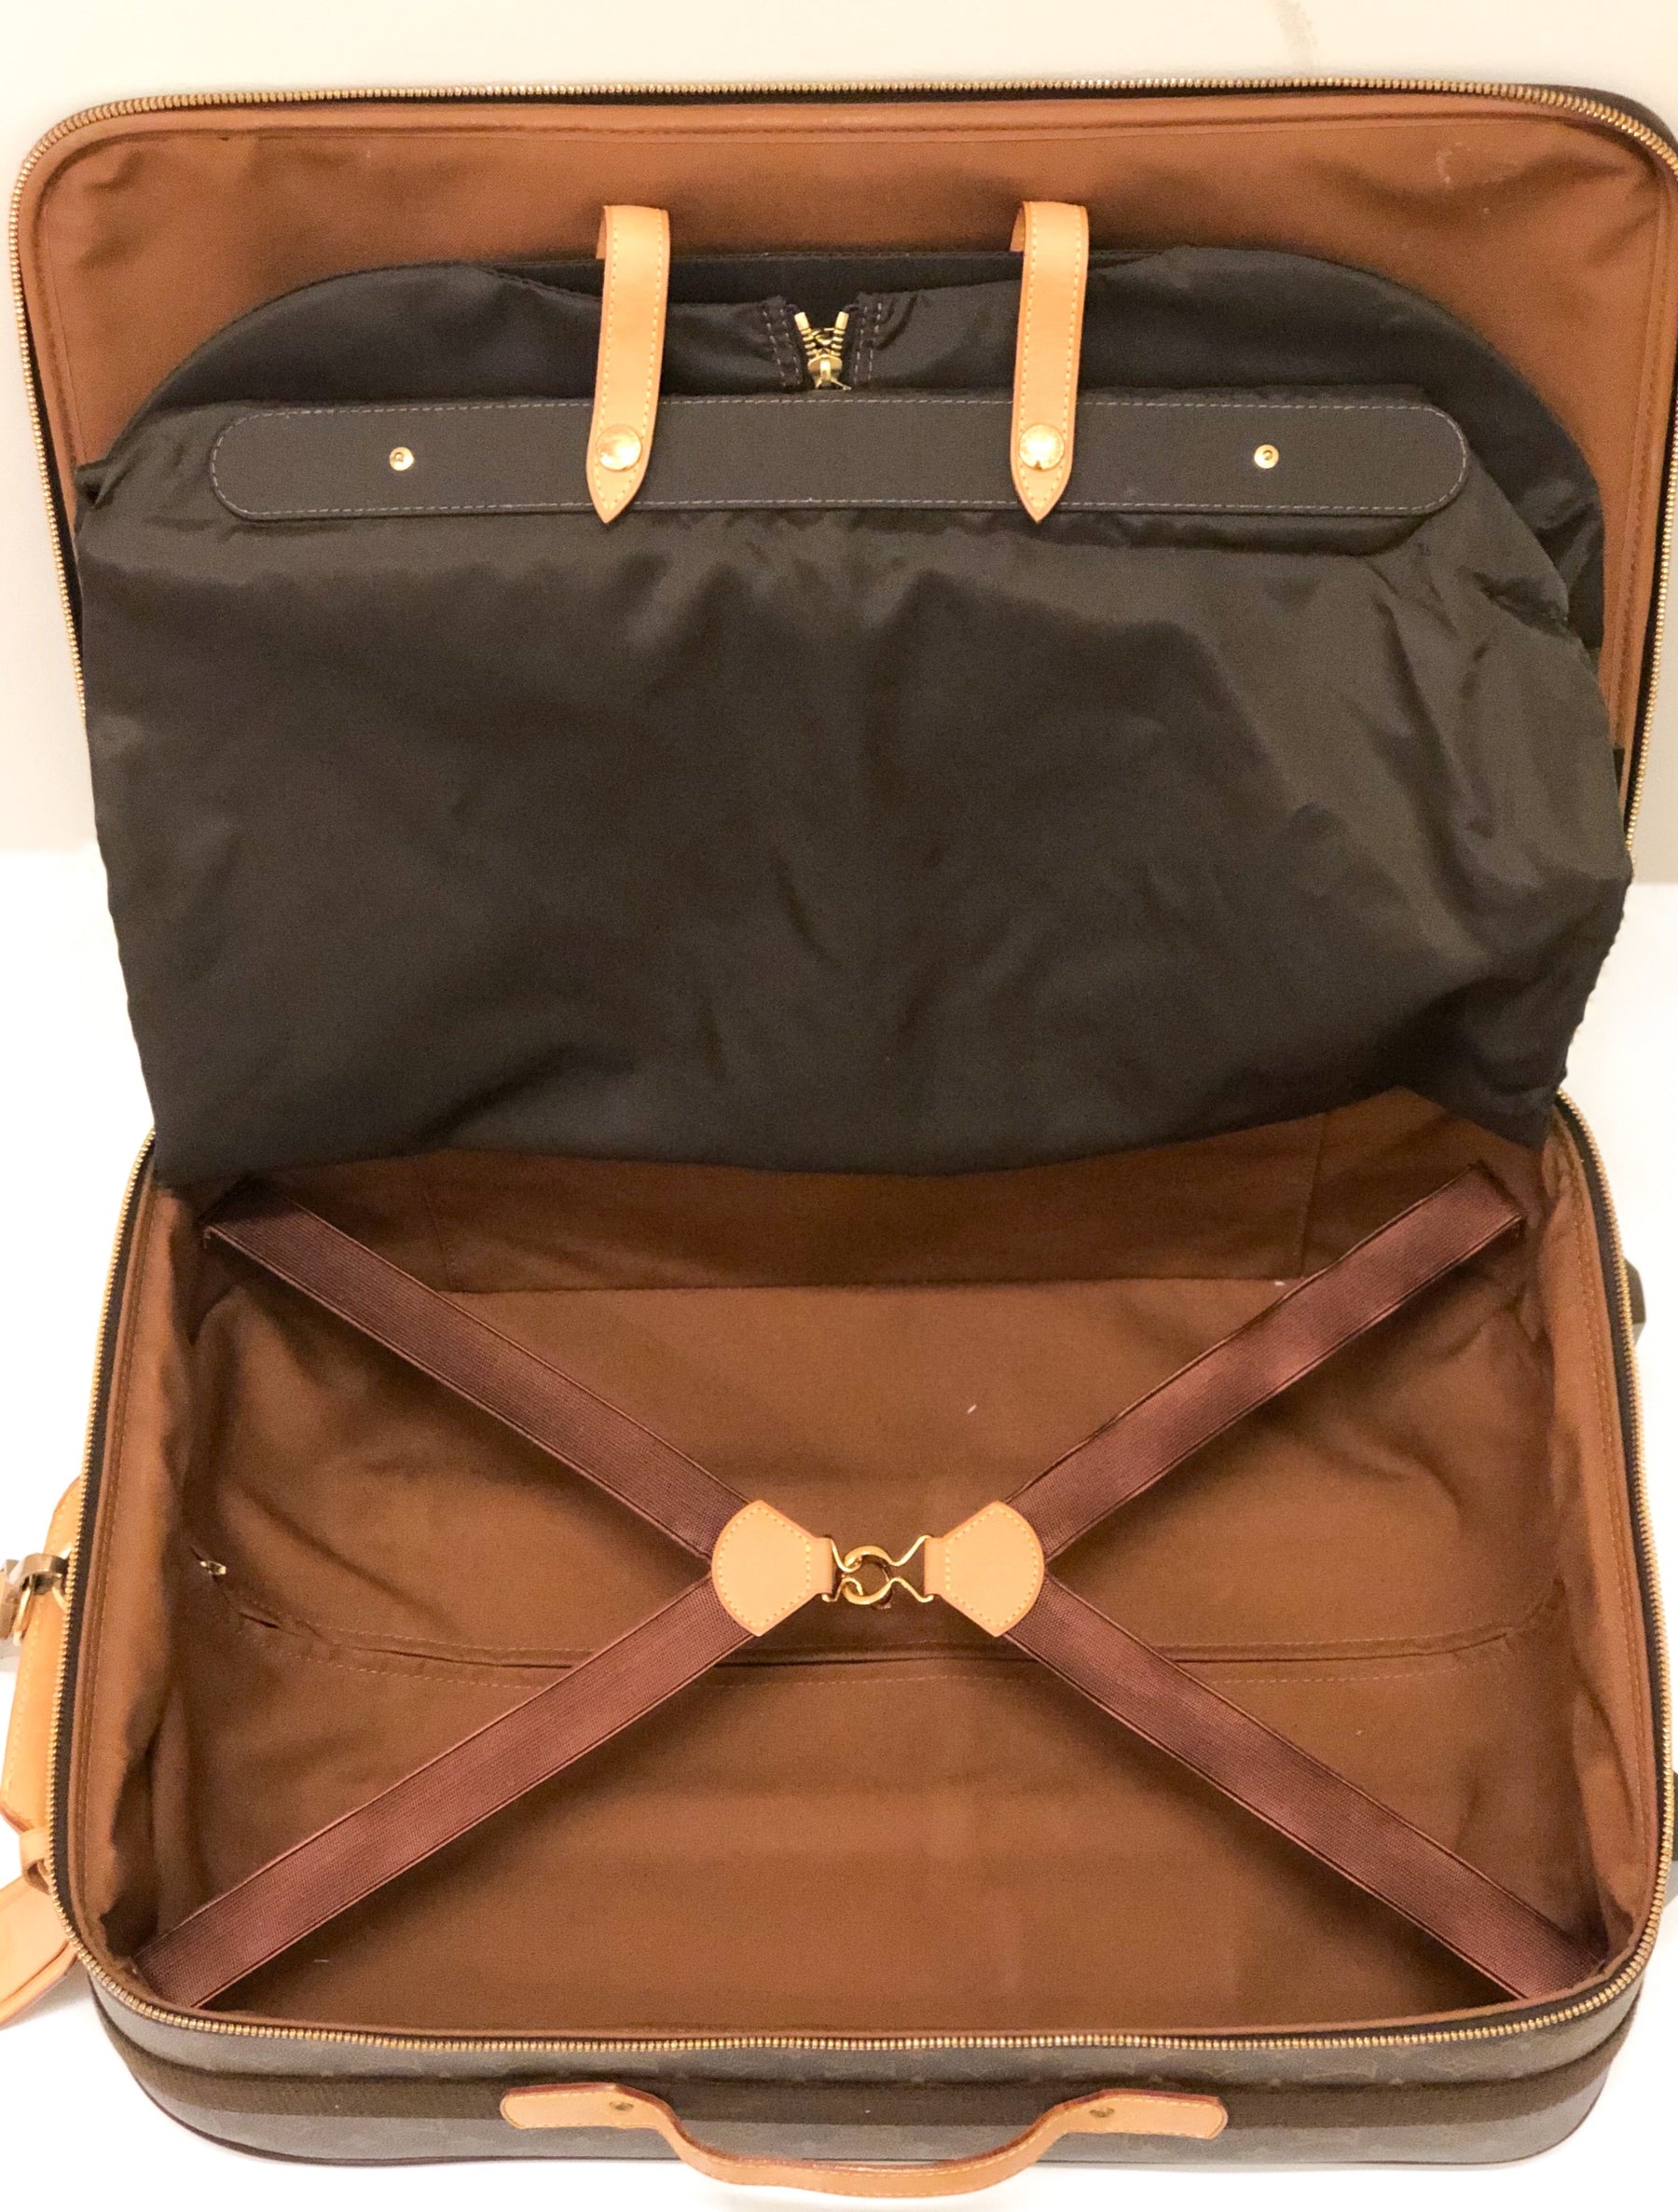 Louis Vuitton Pegase 55 Rolling Suitcase